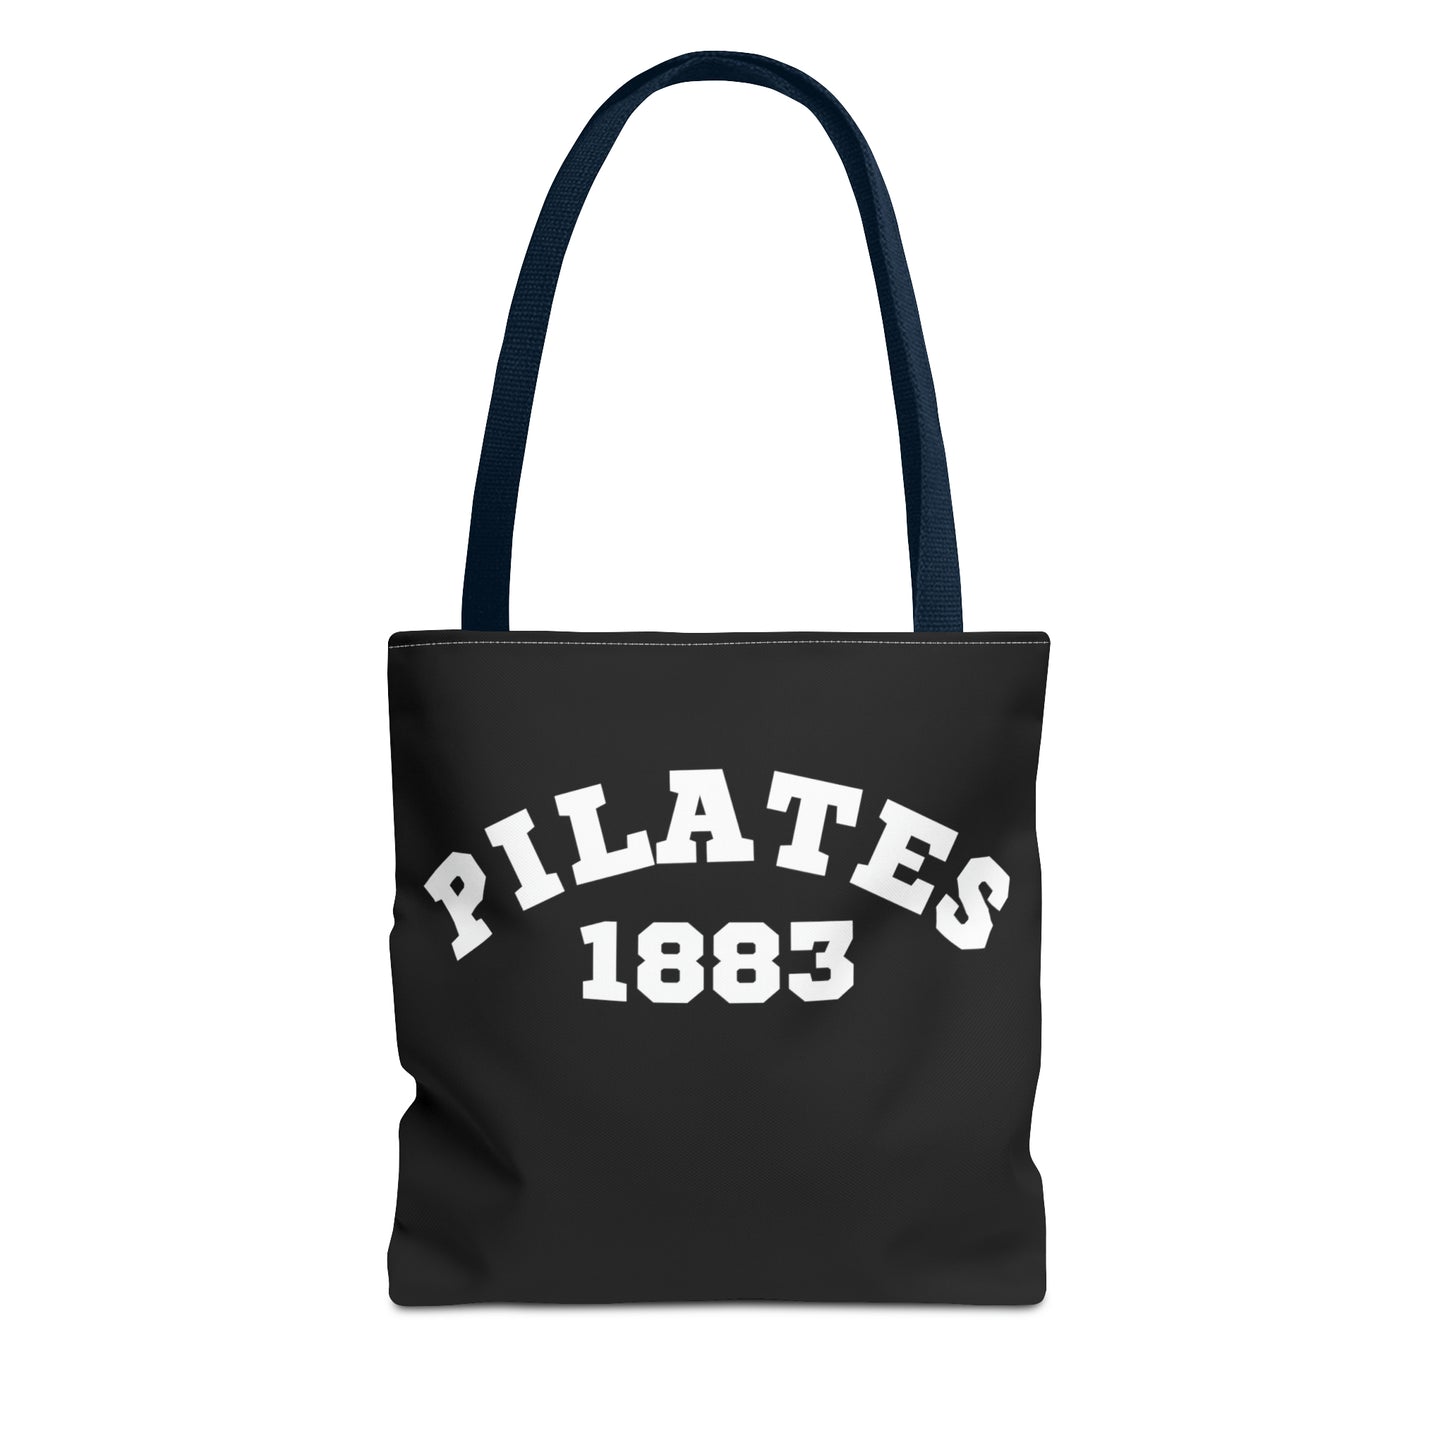 Pilates Tote Bag